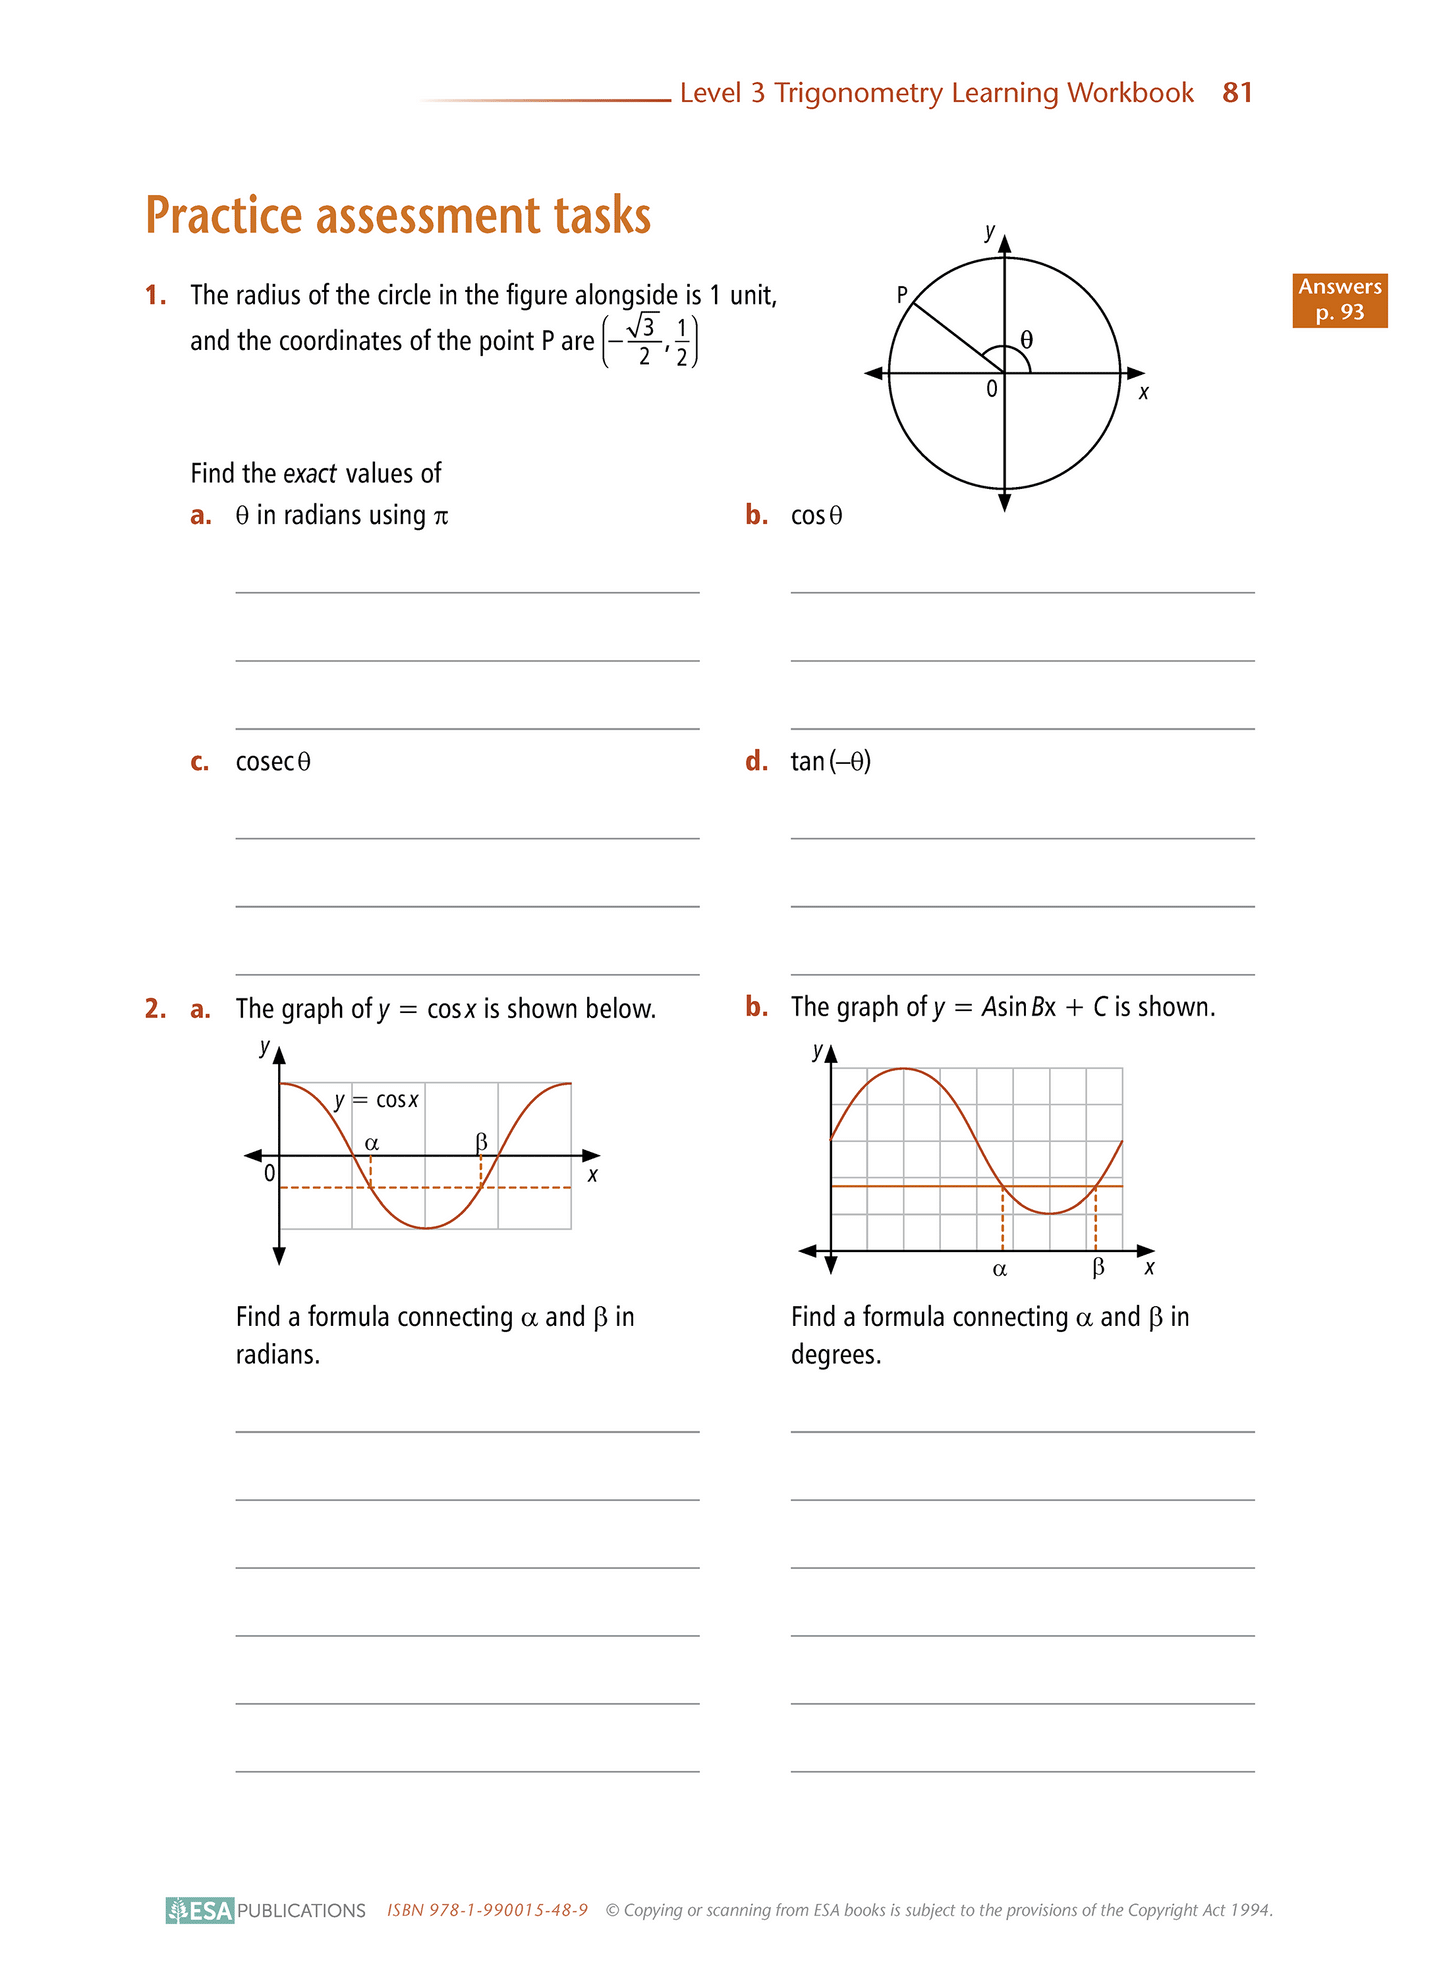 Level 3 Trigonometry 3.3 Learning Workbook